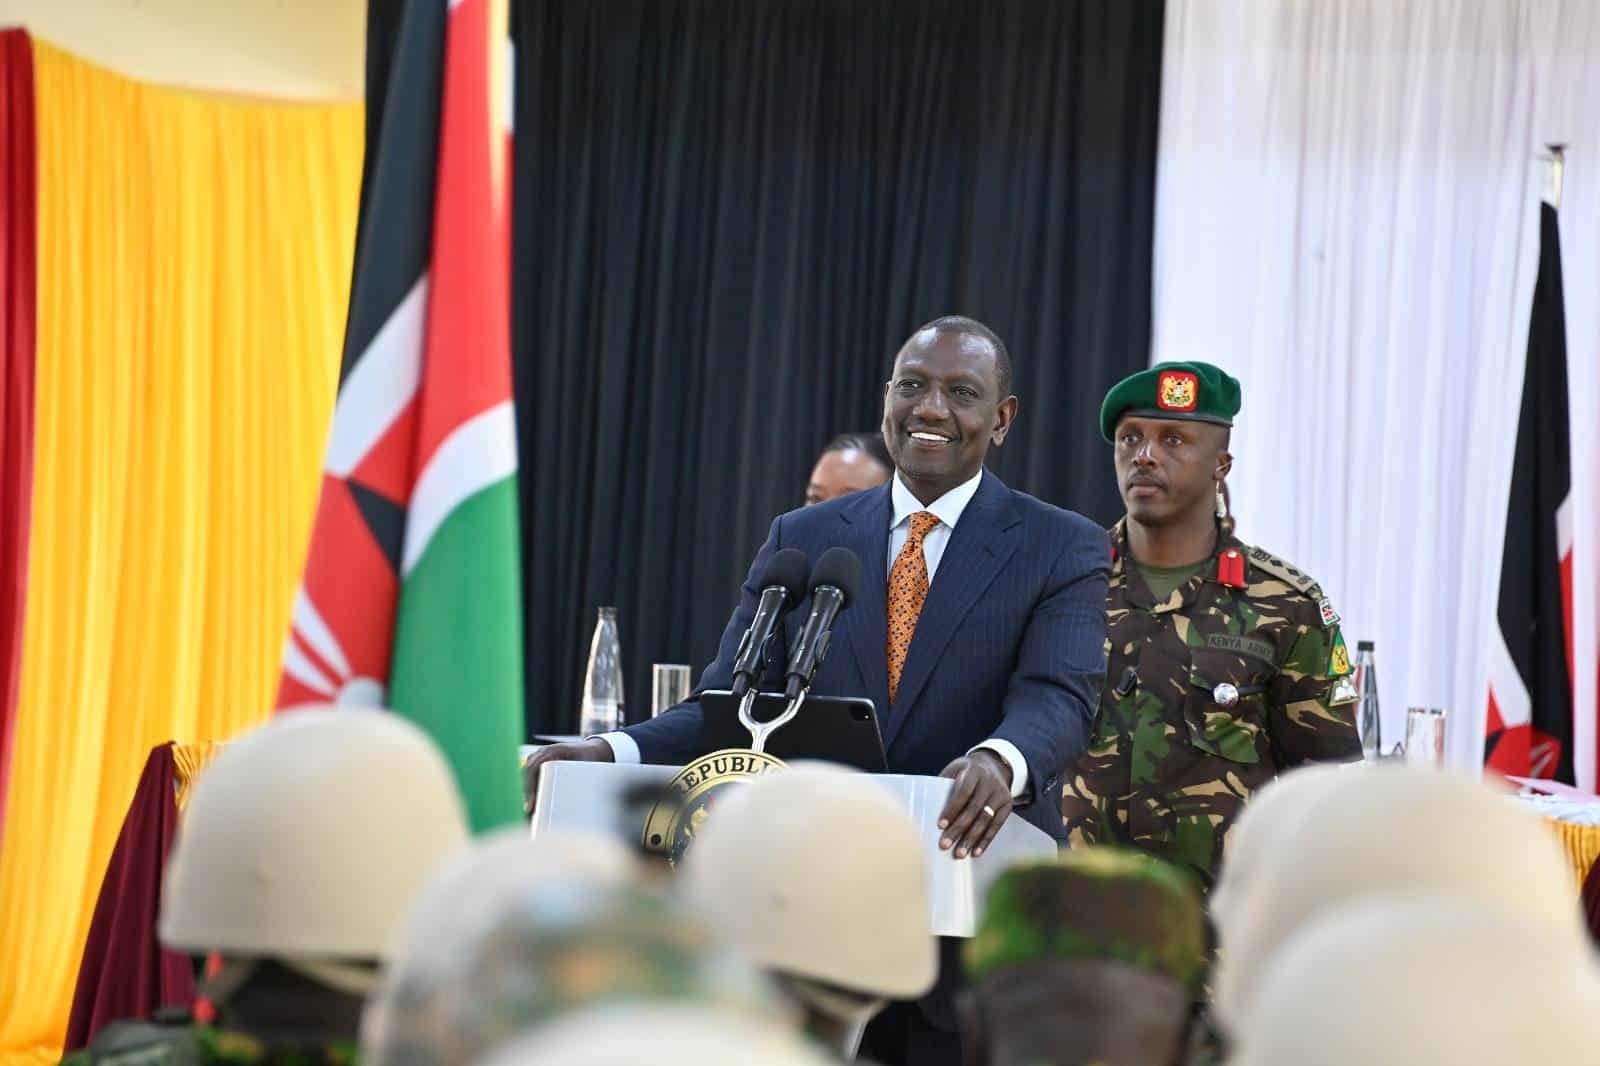 El presidente de Kenia, William Ruto, despidió en un acto oficial a unos 400 agentes.